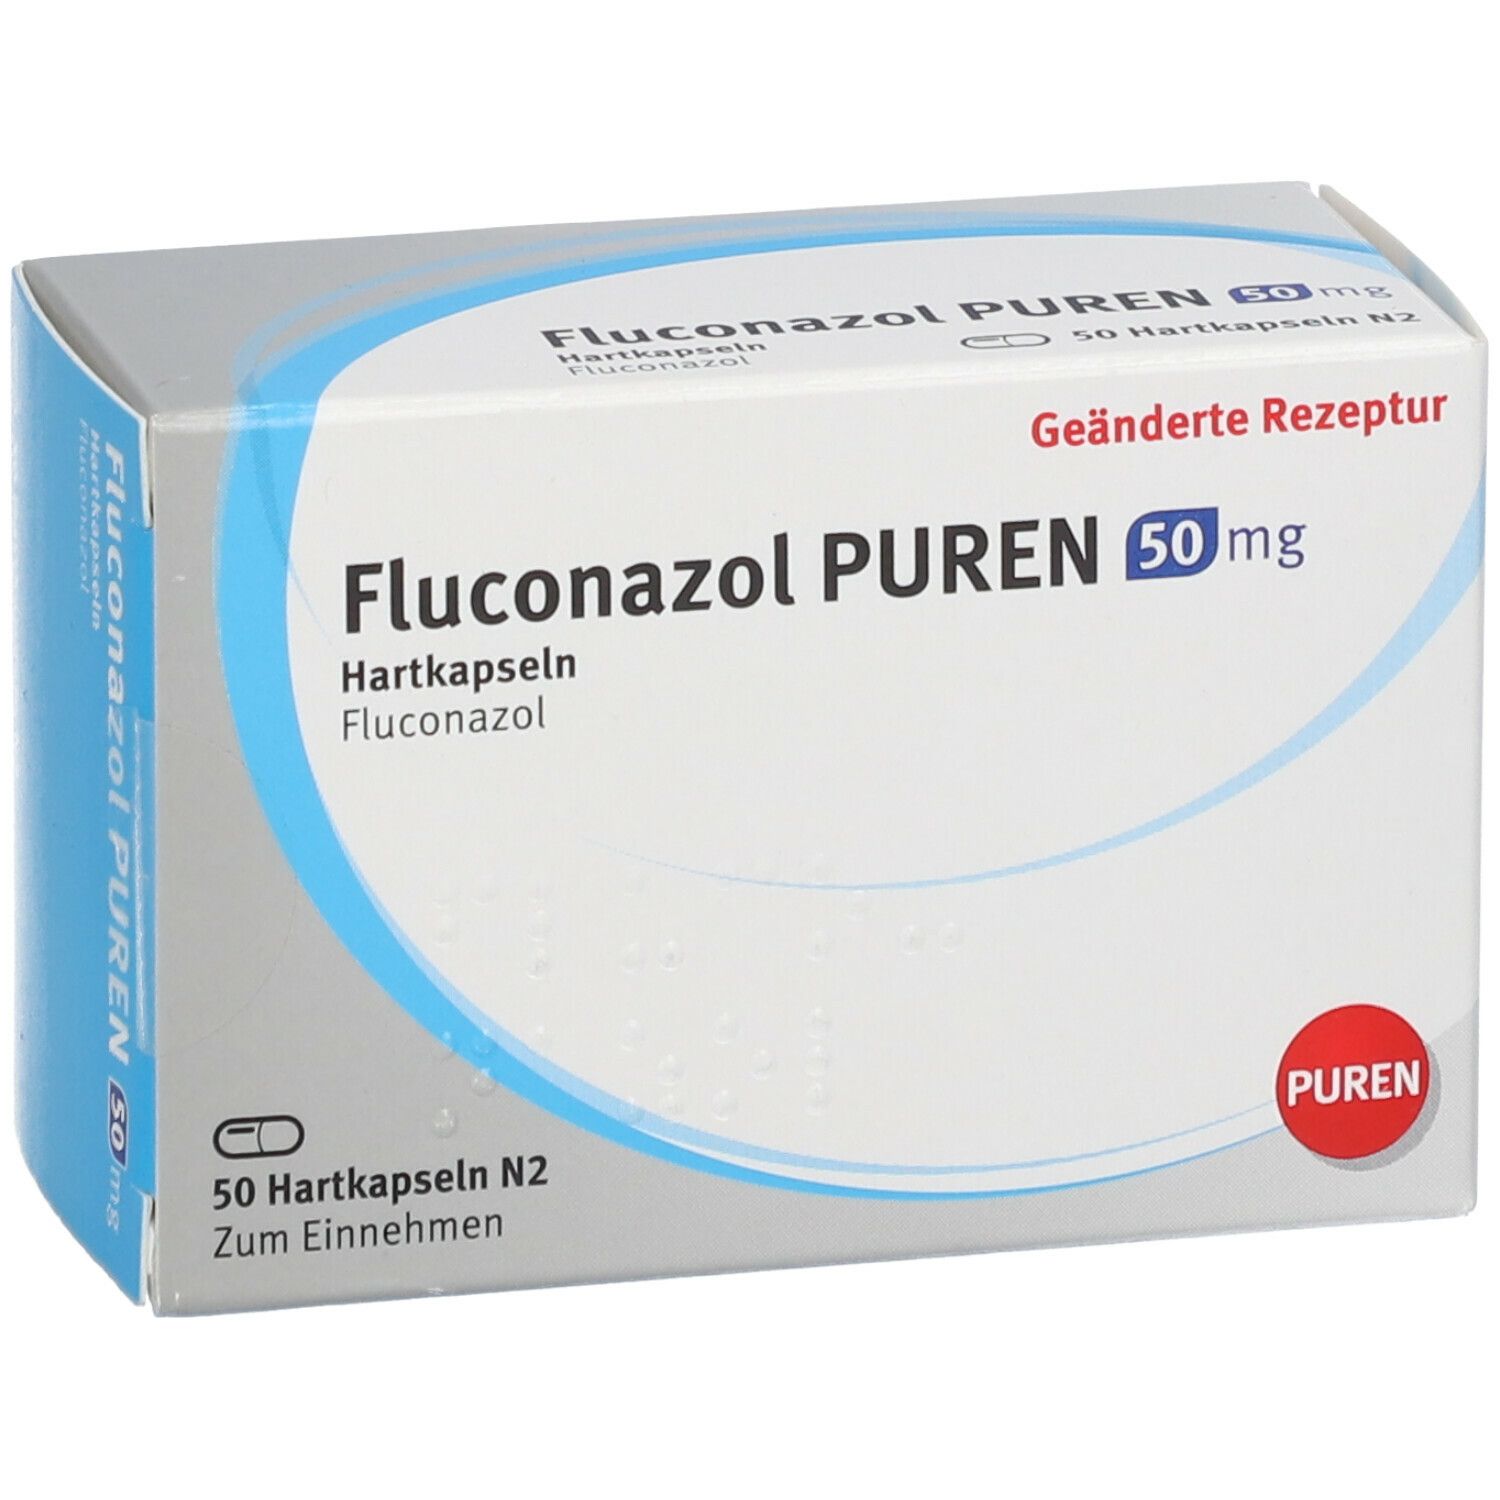 Fluconazol PUREN 50 mg